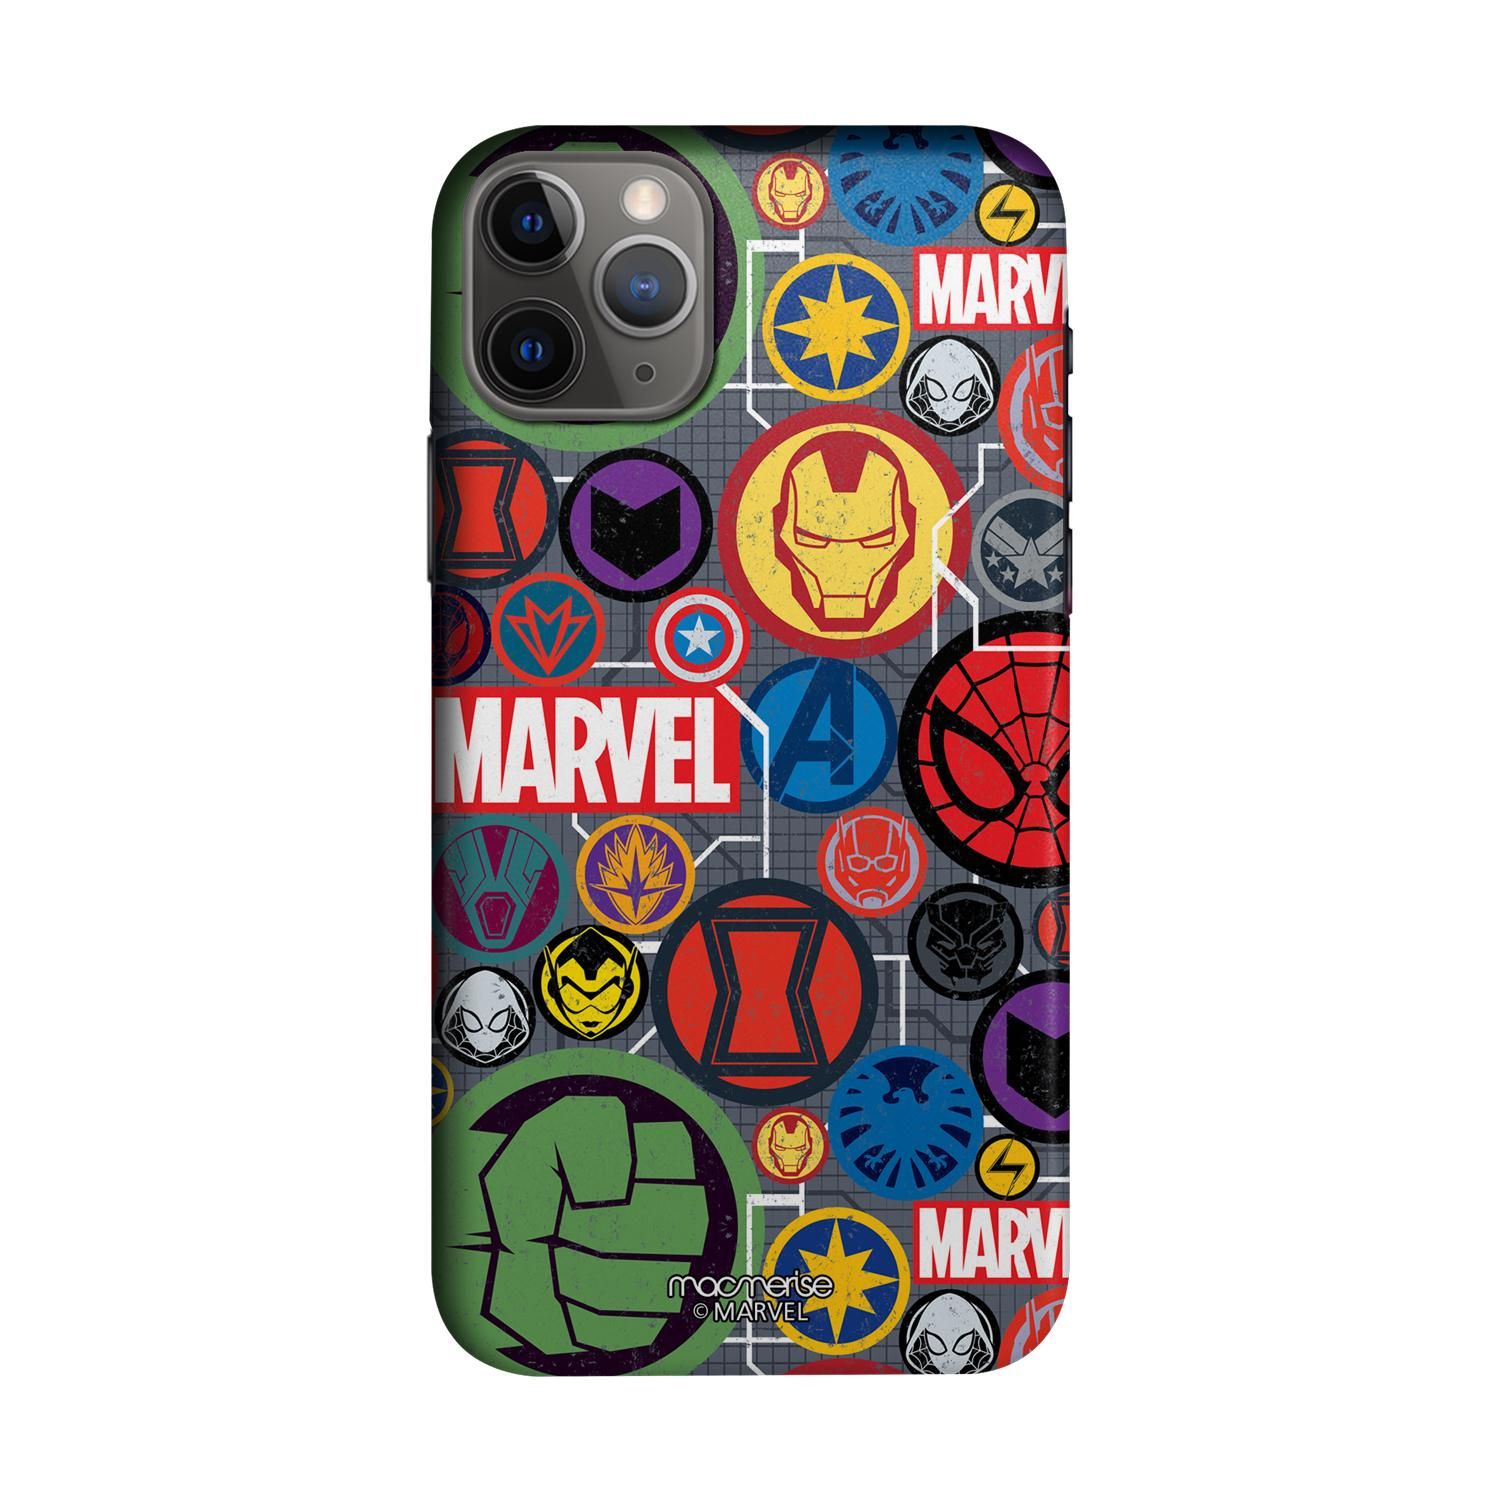 Buy Marvel Iconic Mashup - Sleek Phone Case for iPhone 11 Pro Max Online